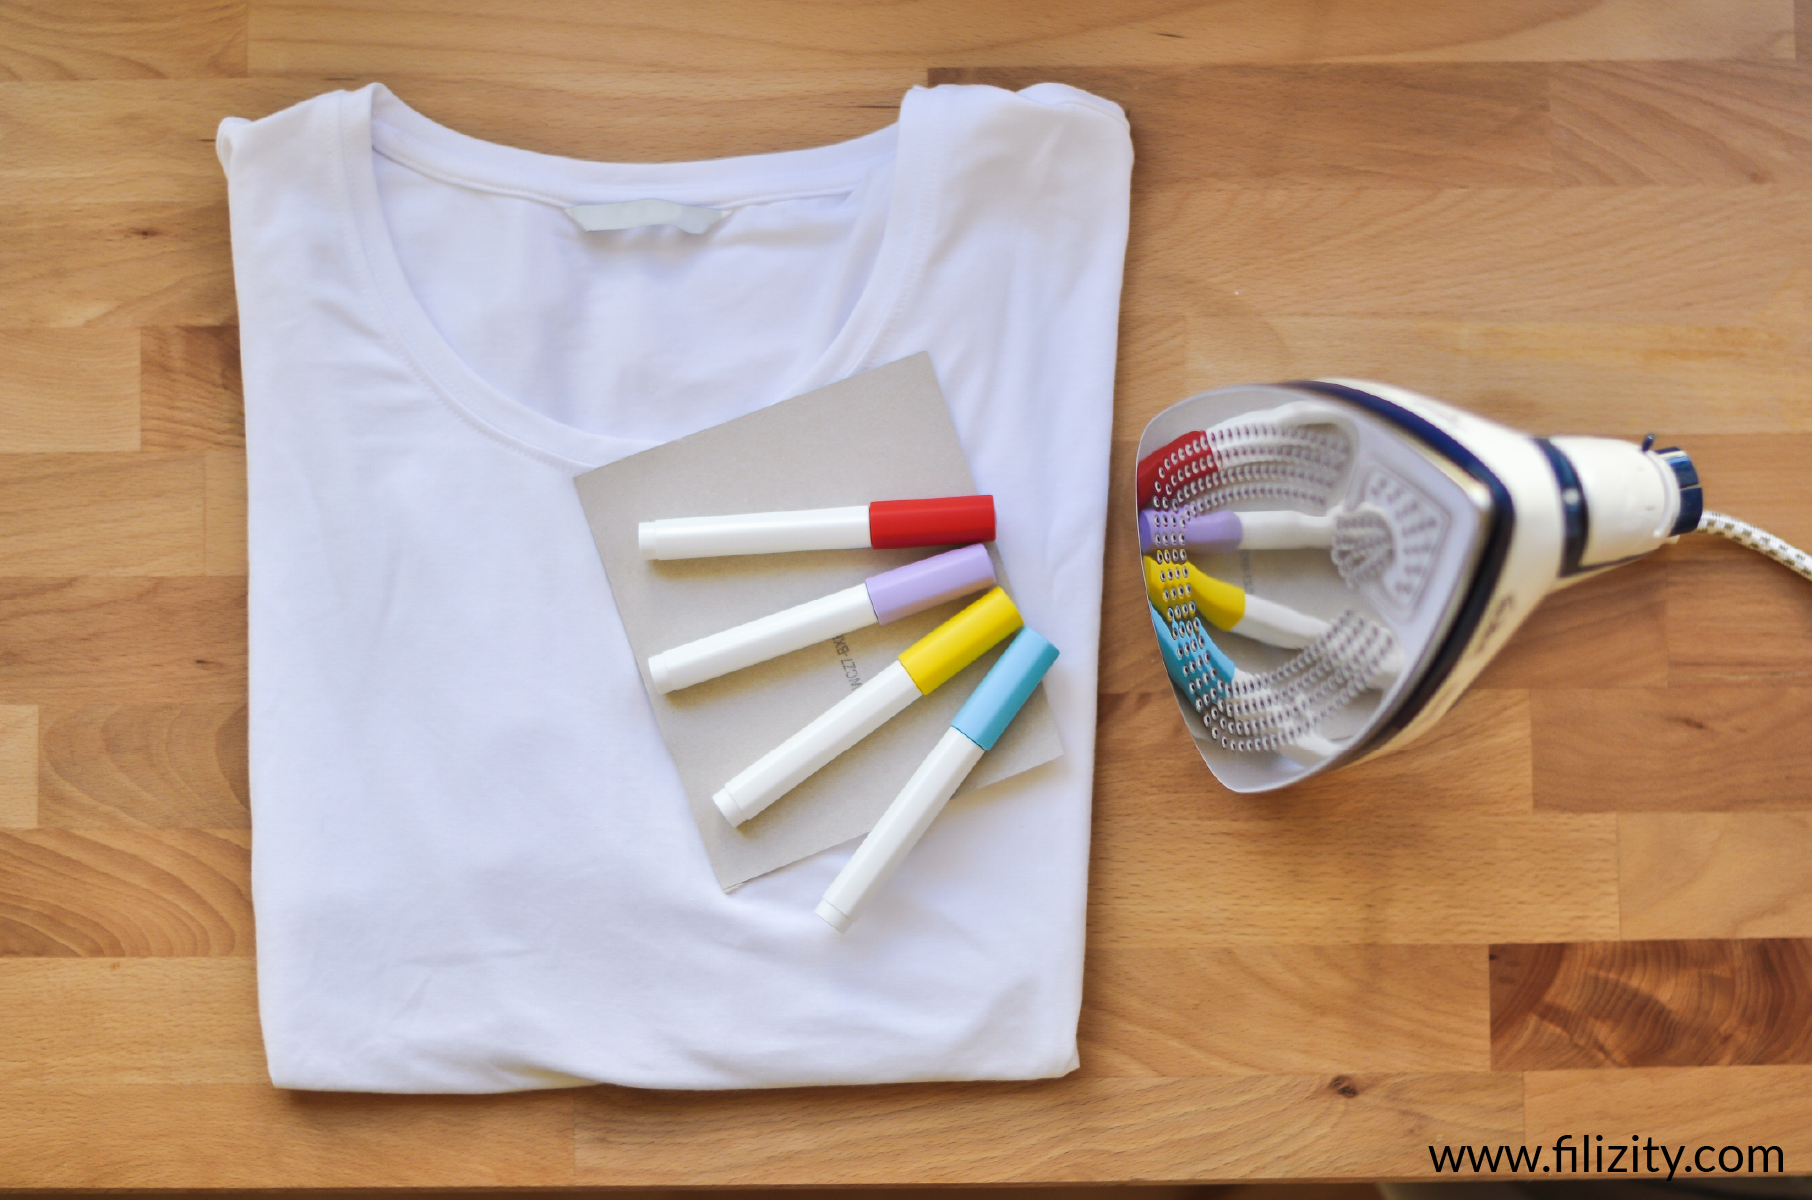 T-Shirt bemalen - minimalistischer Regenbogen | Schnelle DIY Idee von Filizity.com - Kreativmagazin & DIY Blog #corona #regenbogen #wirbleibenzuhause #upcycling